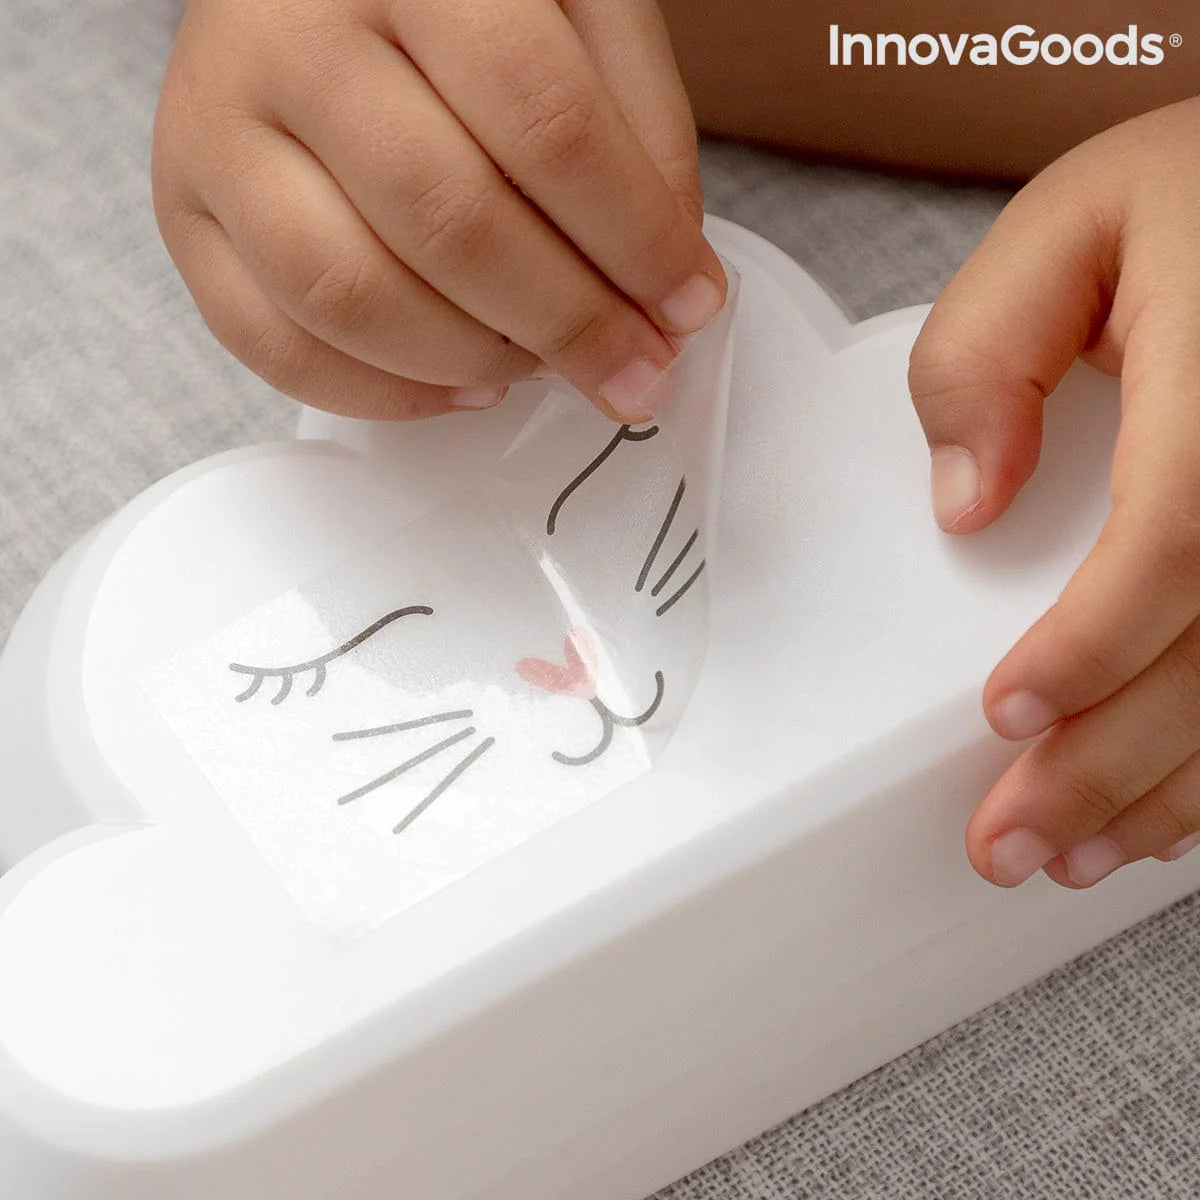 InnovaGoods Spielzeug | Kostüme > Babys und Kinder > Schlafenszeit Lampe mit Regenbogenprojektor und Aufklebern Claibow InnovaGoods